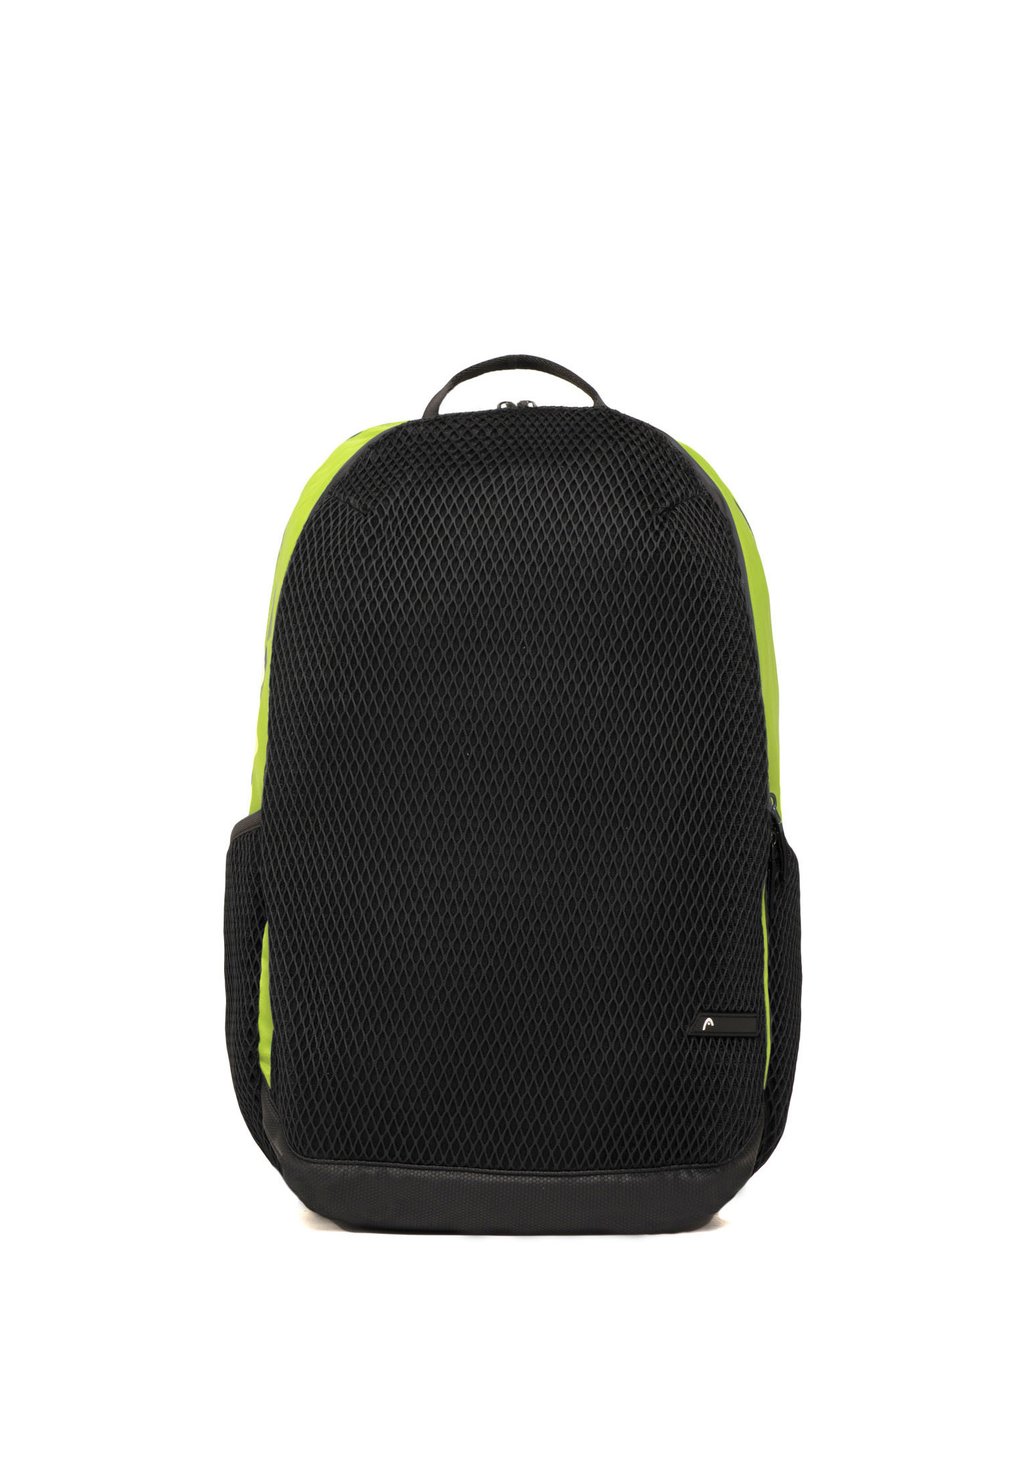 Рюкзак для путешествий Head NET, салатовый/черный рюкзак для путешествий head net vertical темно синий